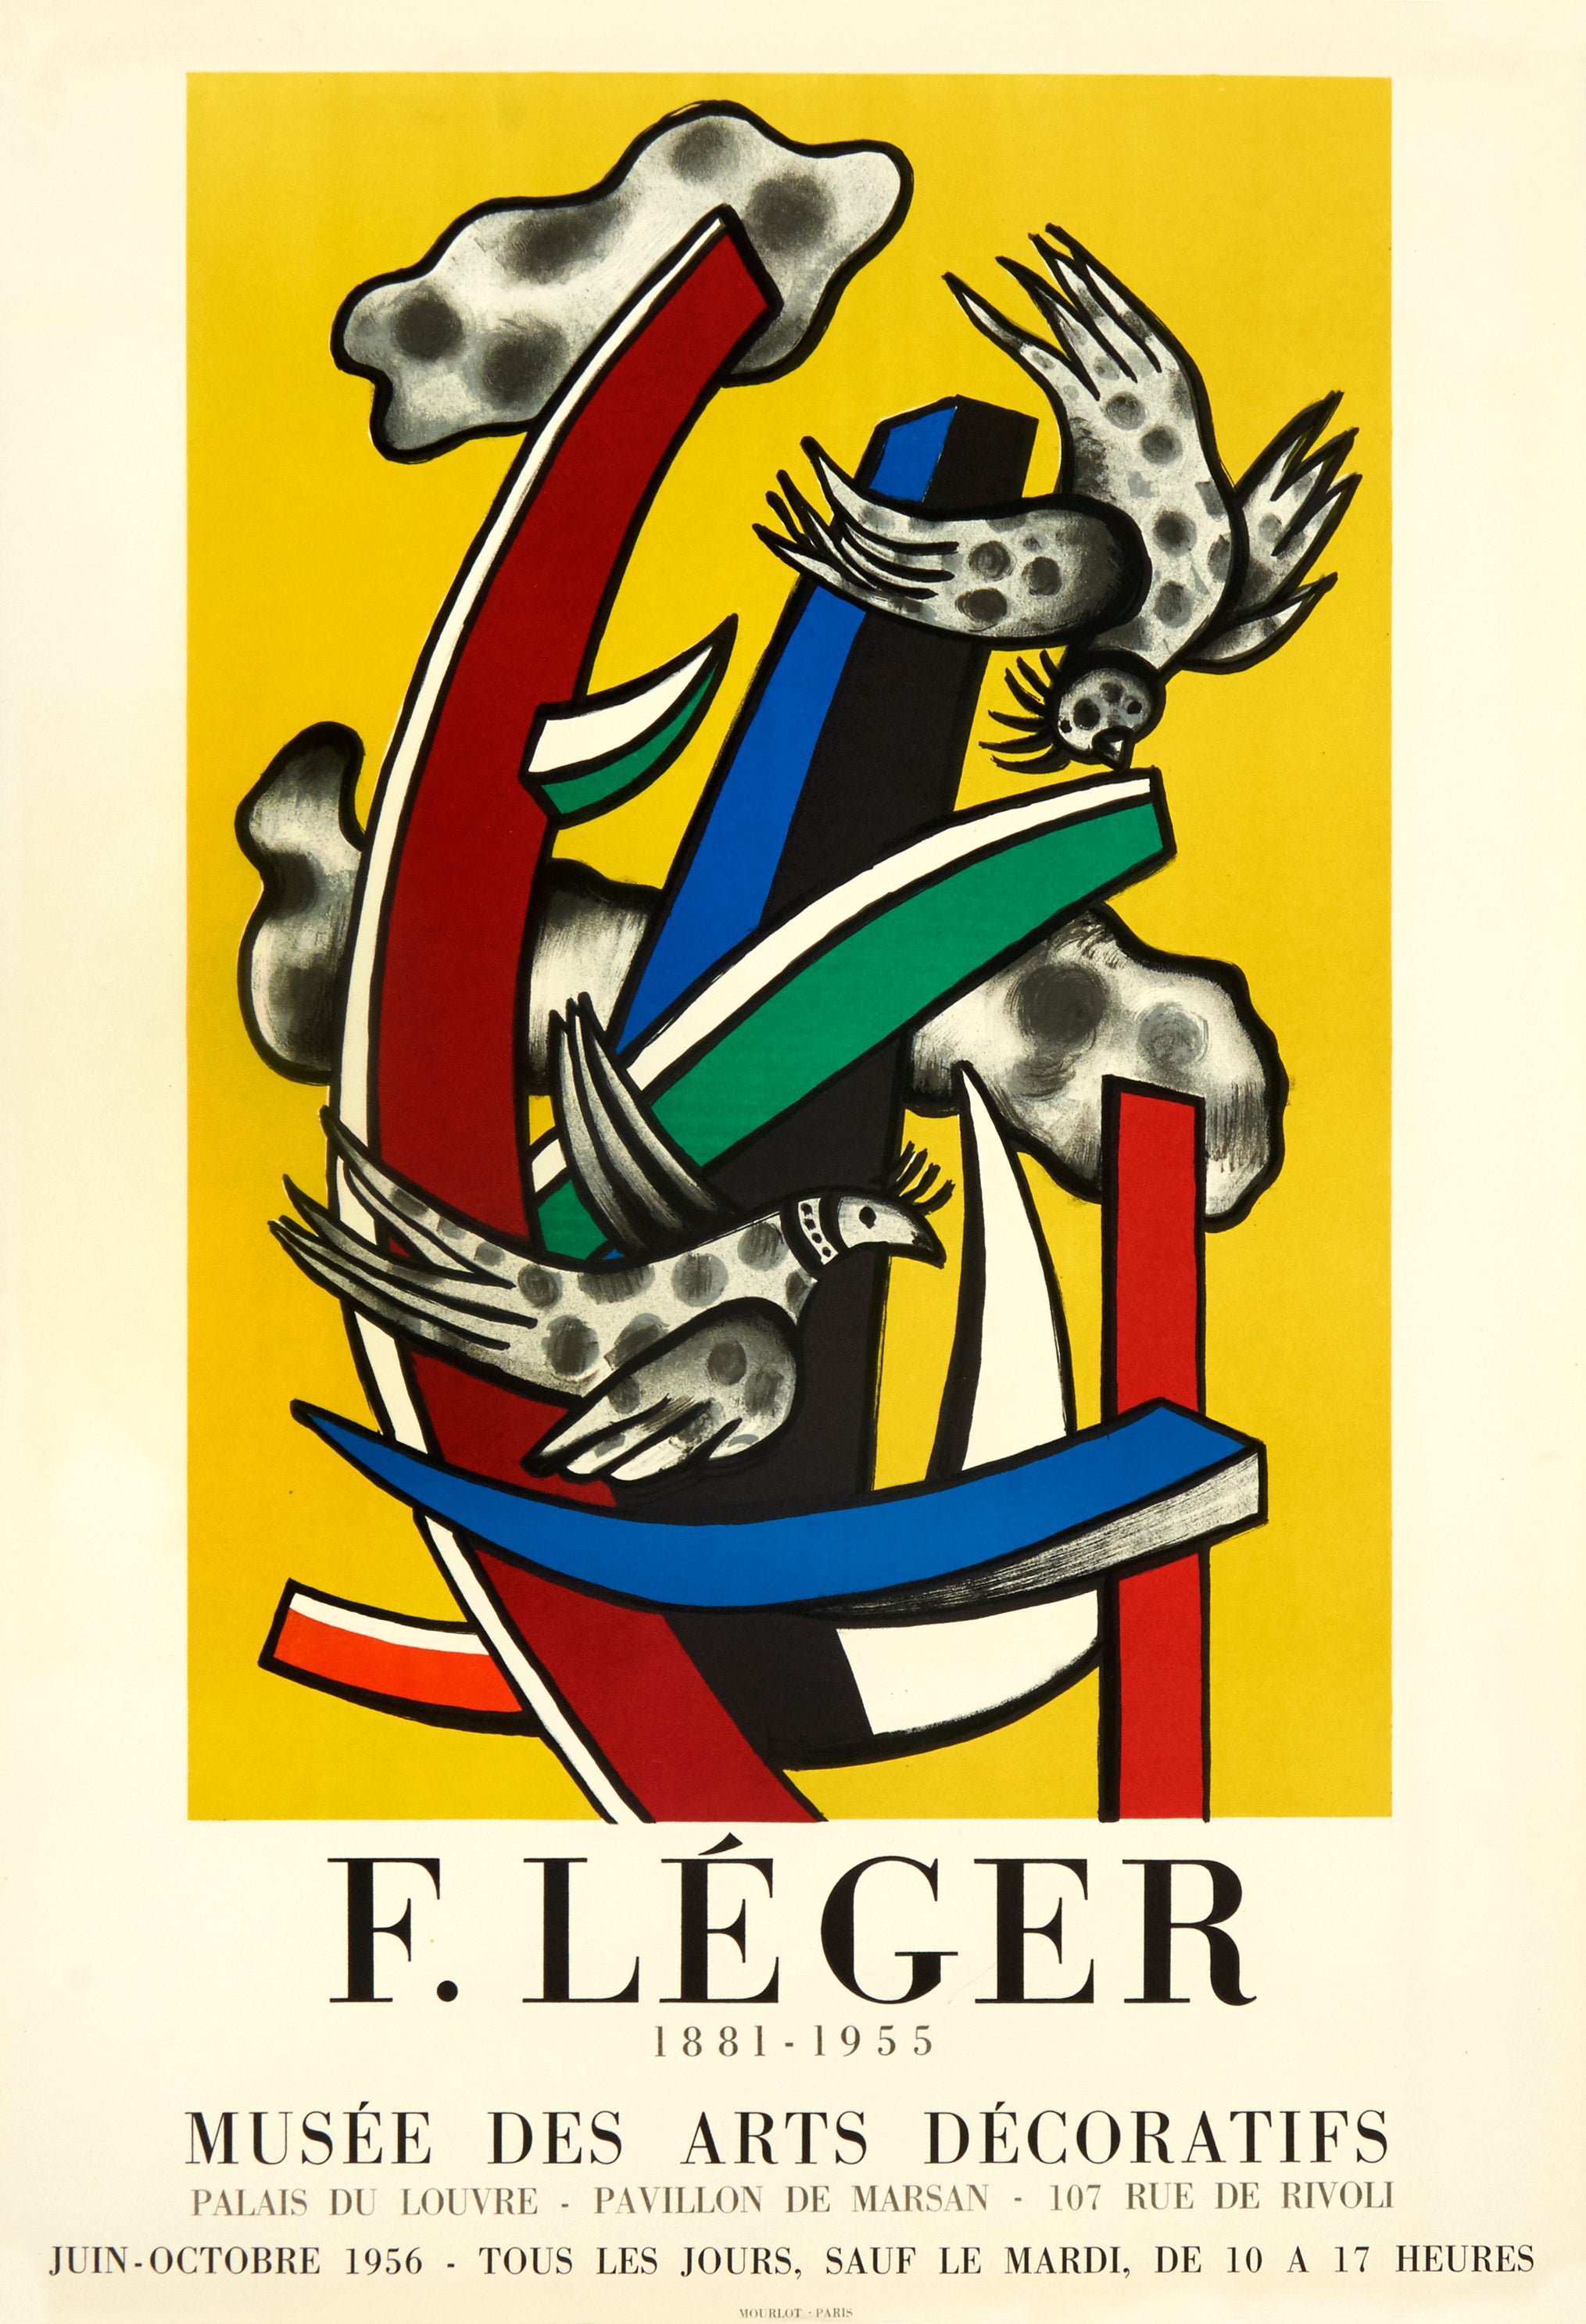 MOURLOT EDITIONS: Musée des Arts Decoratifs by Fernand Léger – Mourlot  Editions